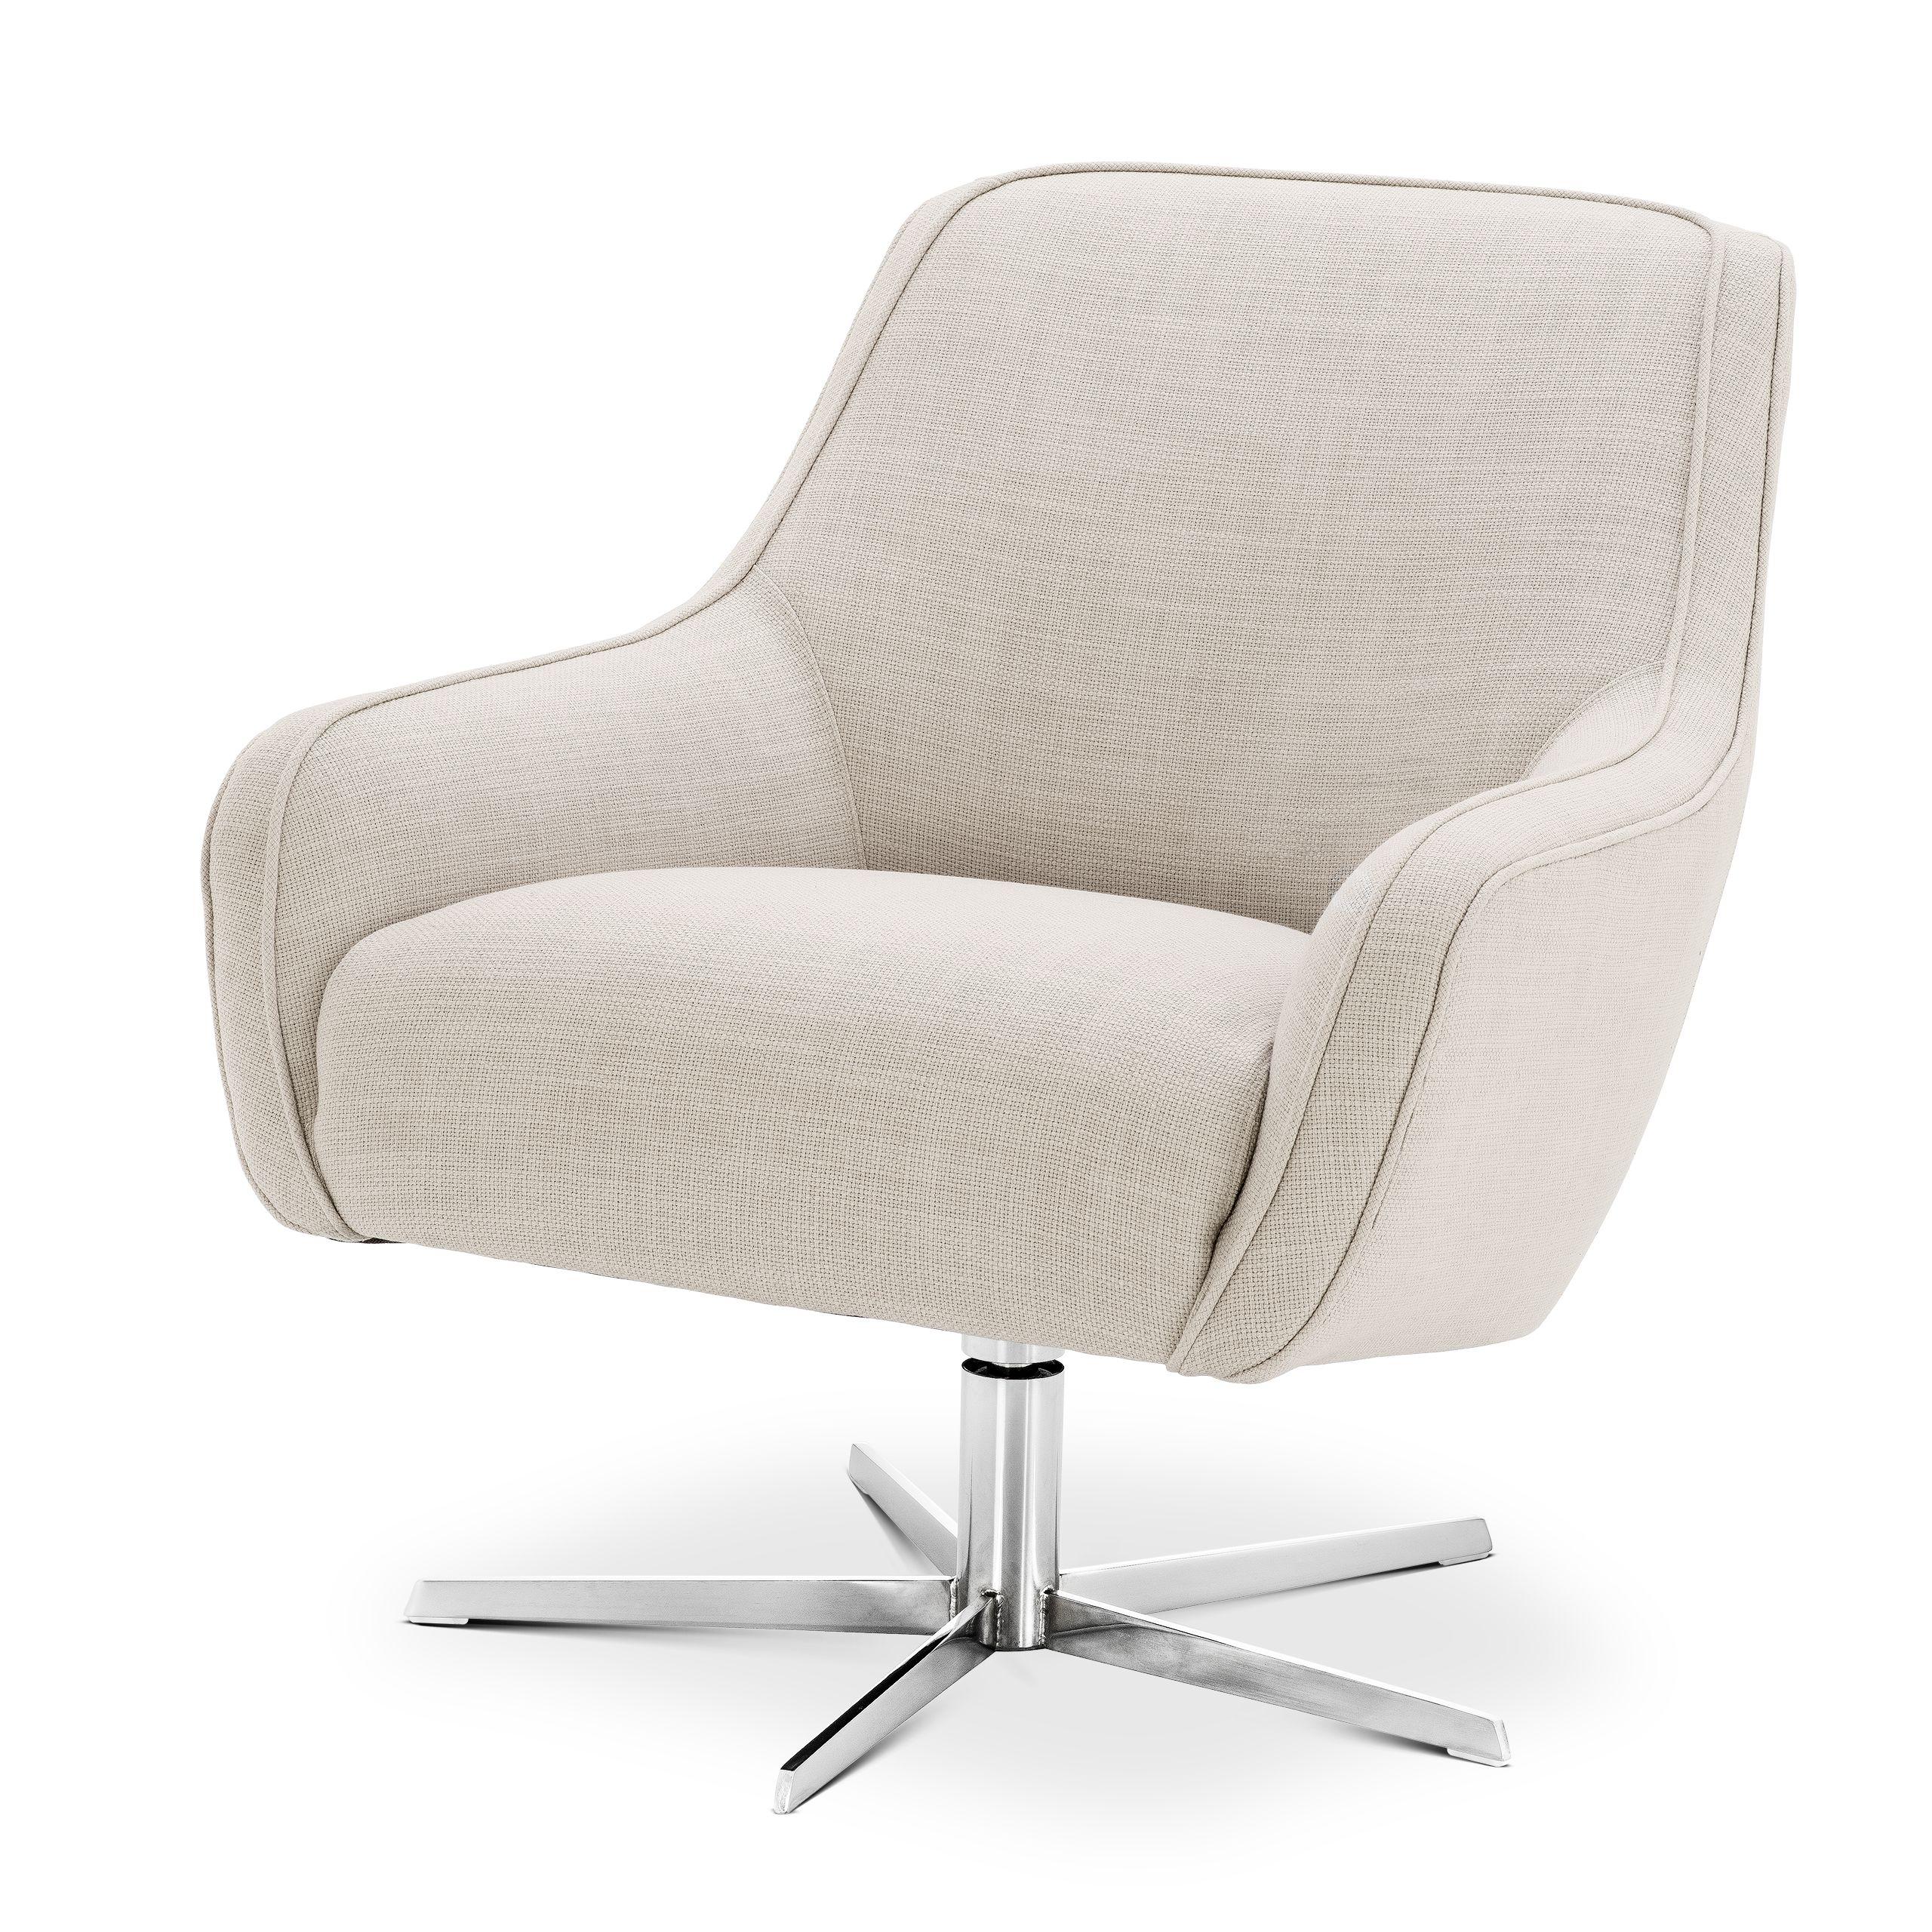 Купить Крутящееся кресло Swivel Chair Serena в интернет-магазине roooms.ru